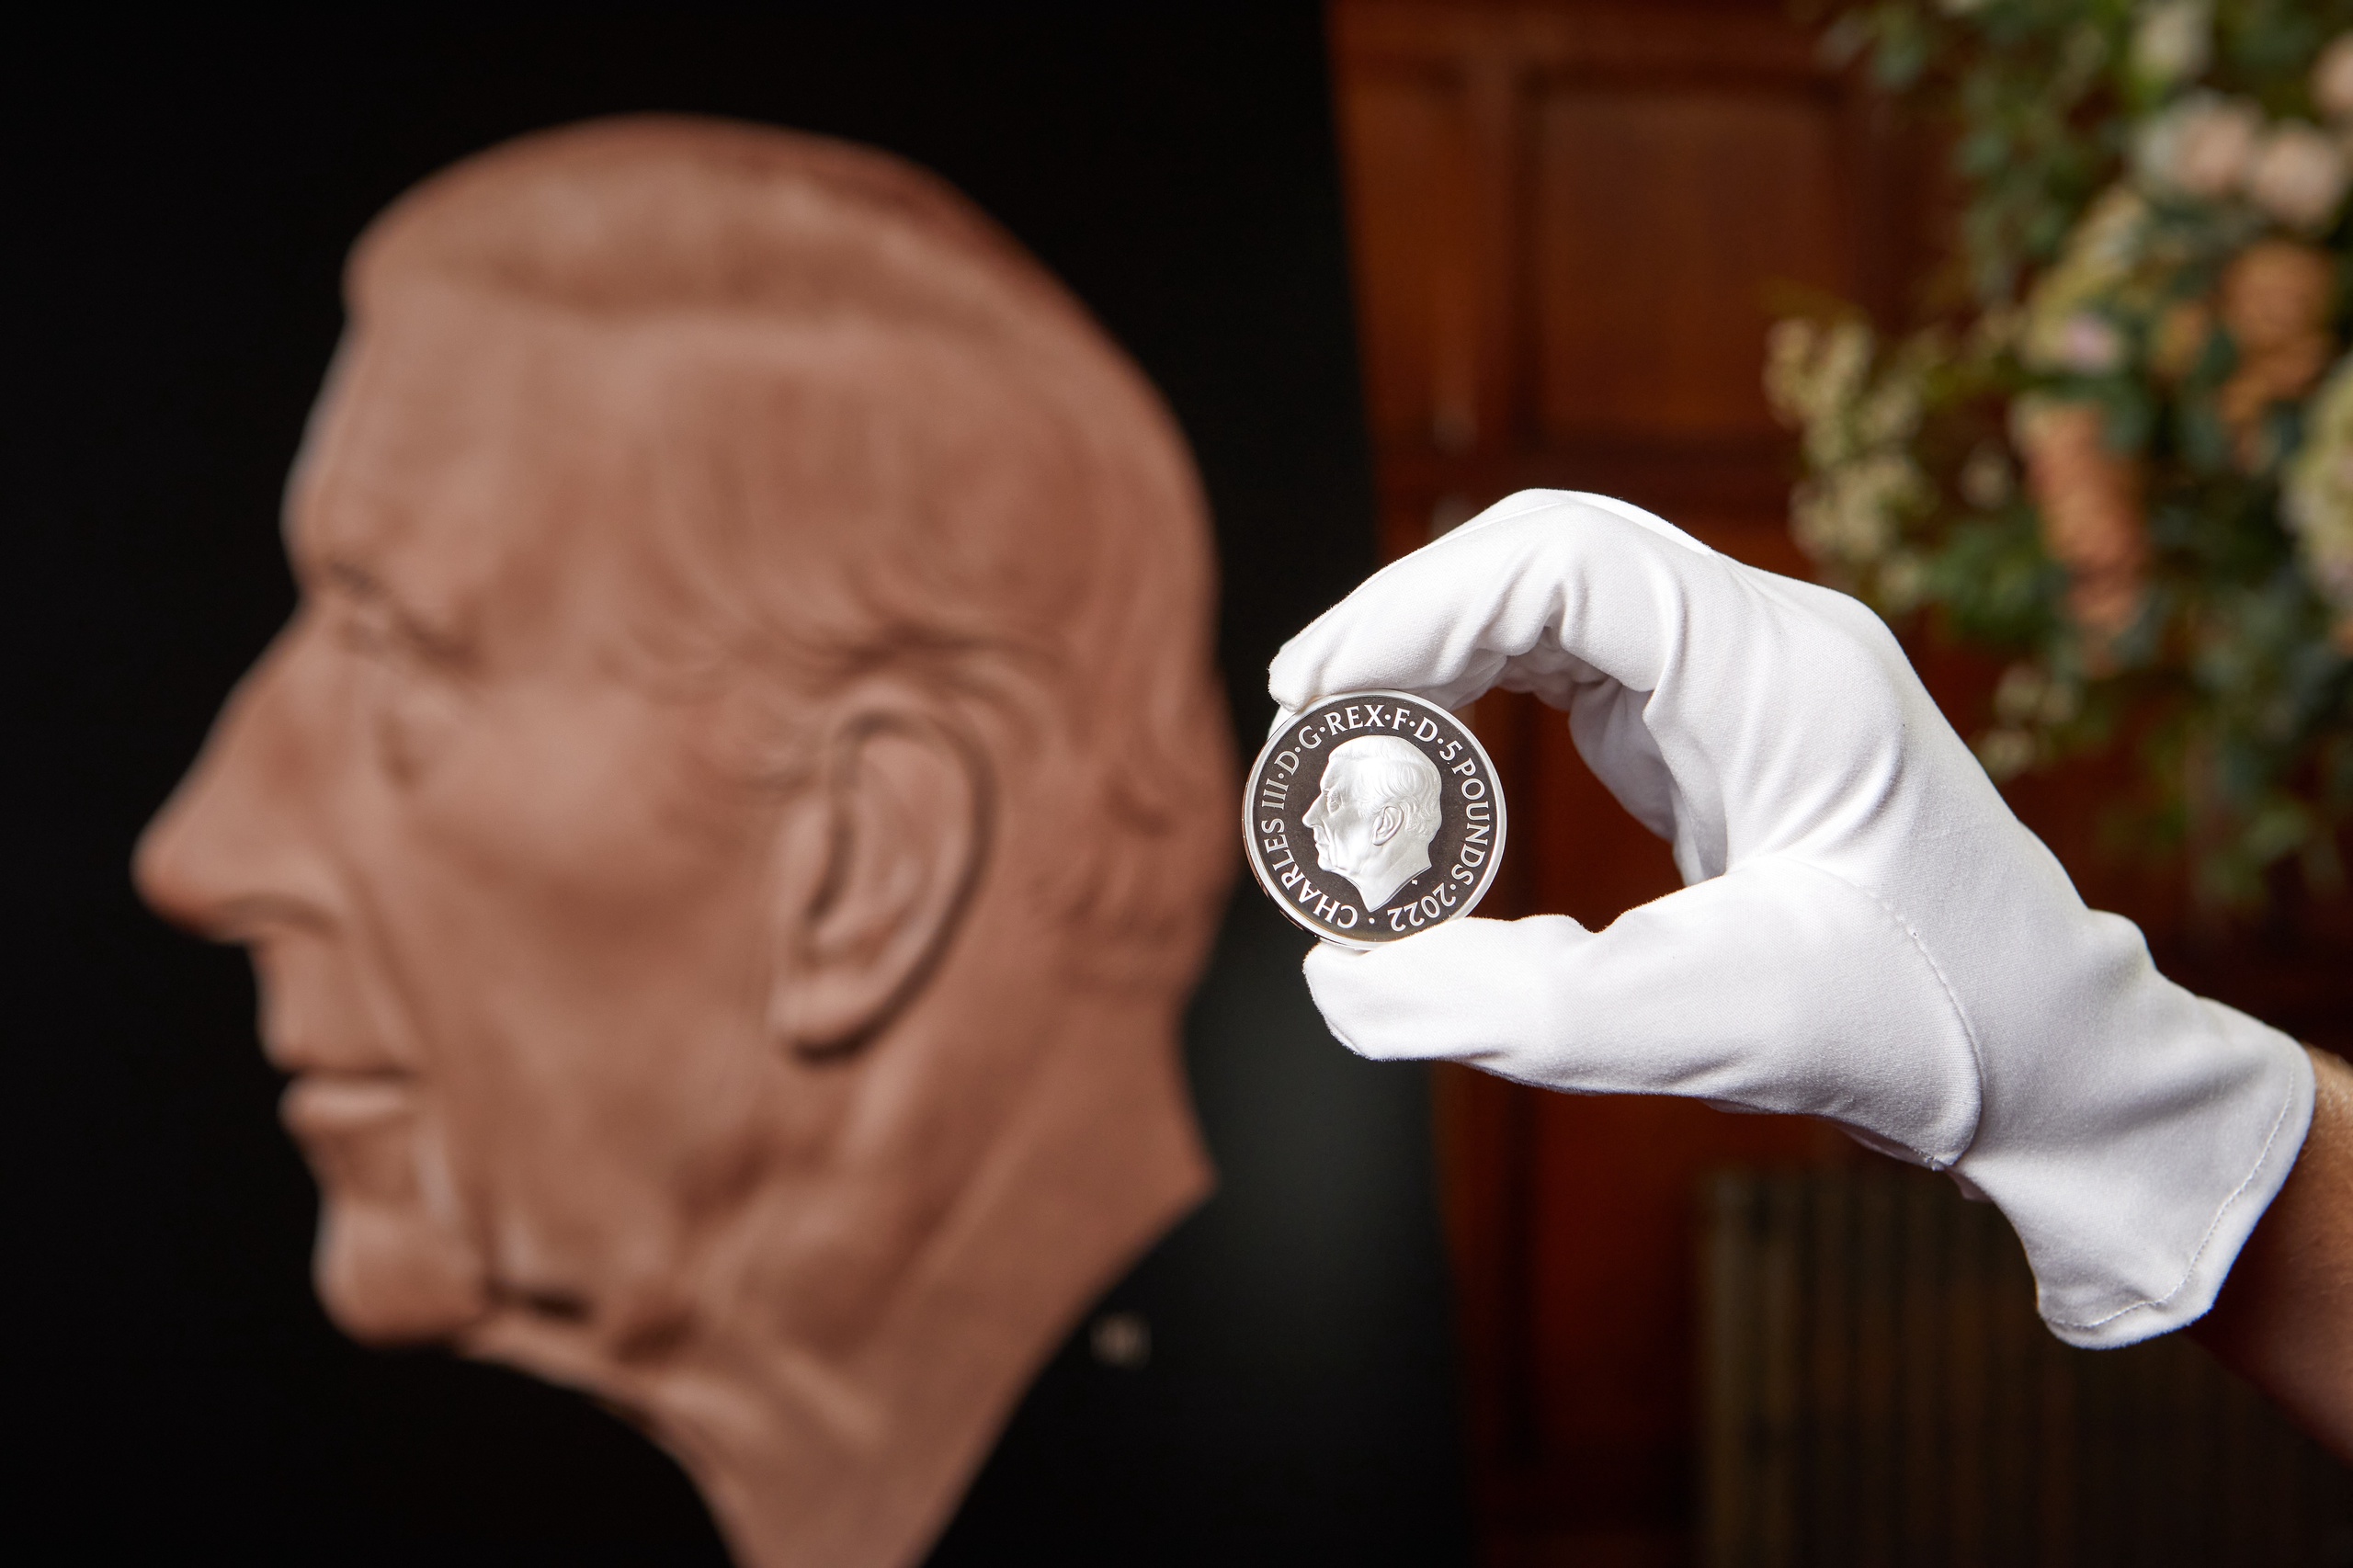 Koning Charles kijkt naar links op de munten, in tegenstelling tot zijn moeder die naar rechts keek